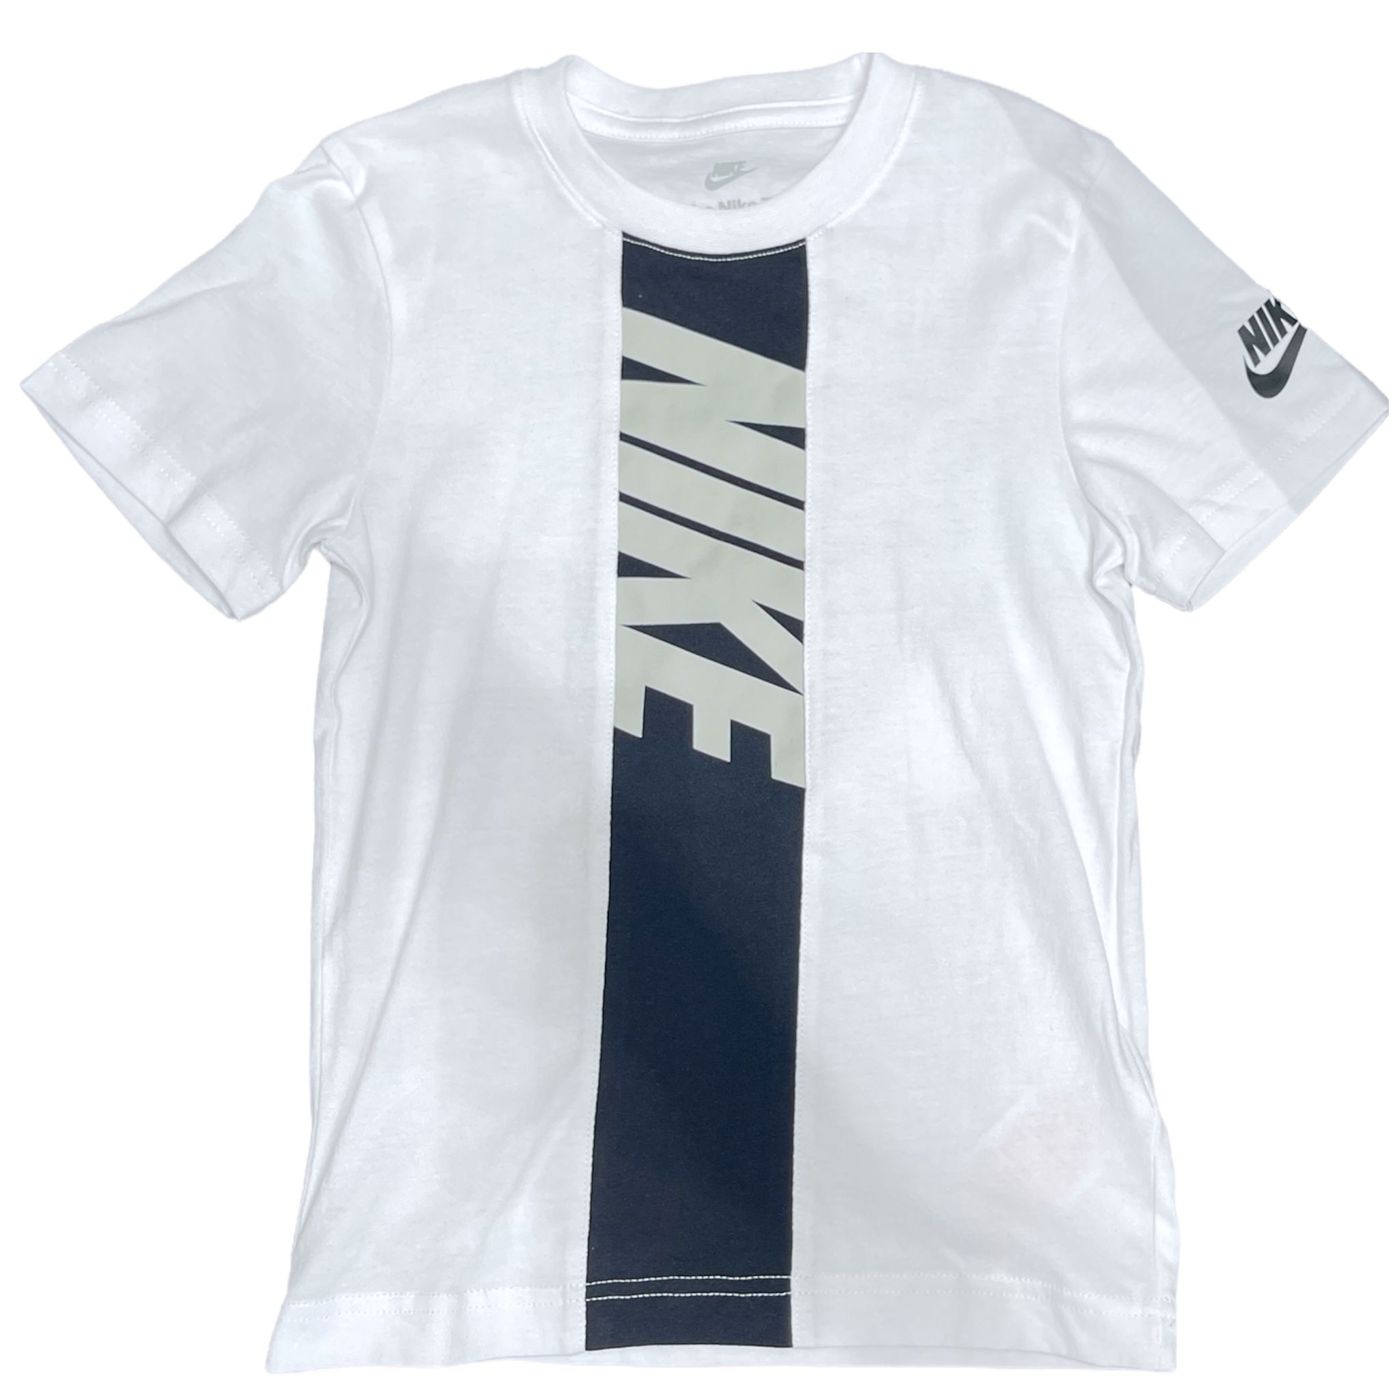 86J148-001 - T-Shirt - Nike